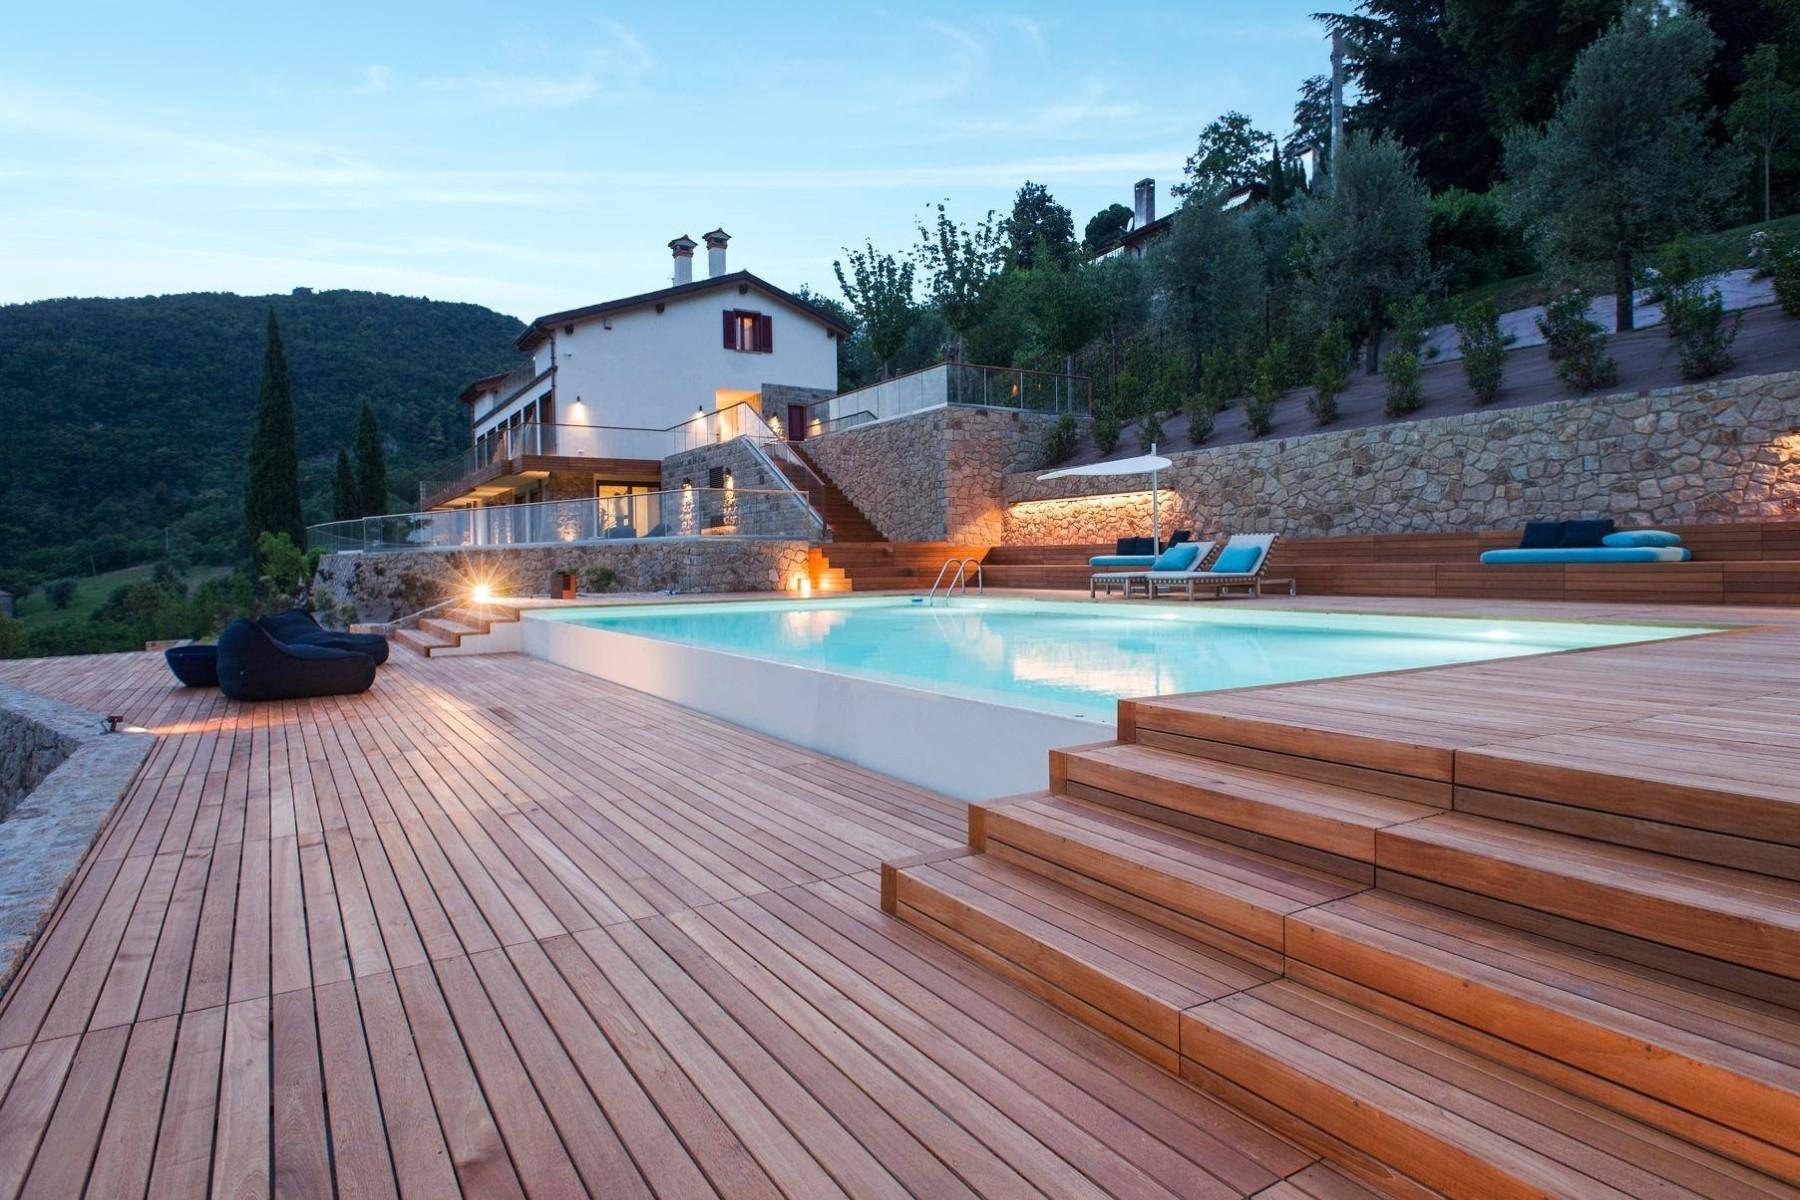 Villa moderna in collina con piscina, eliporto, maneggio e lodge - 5